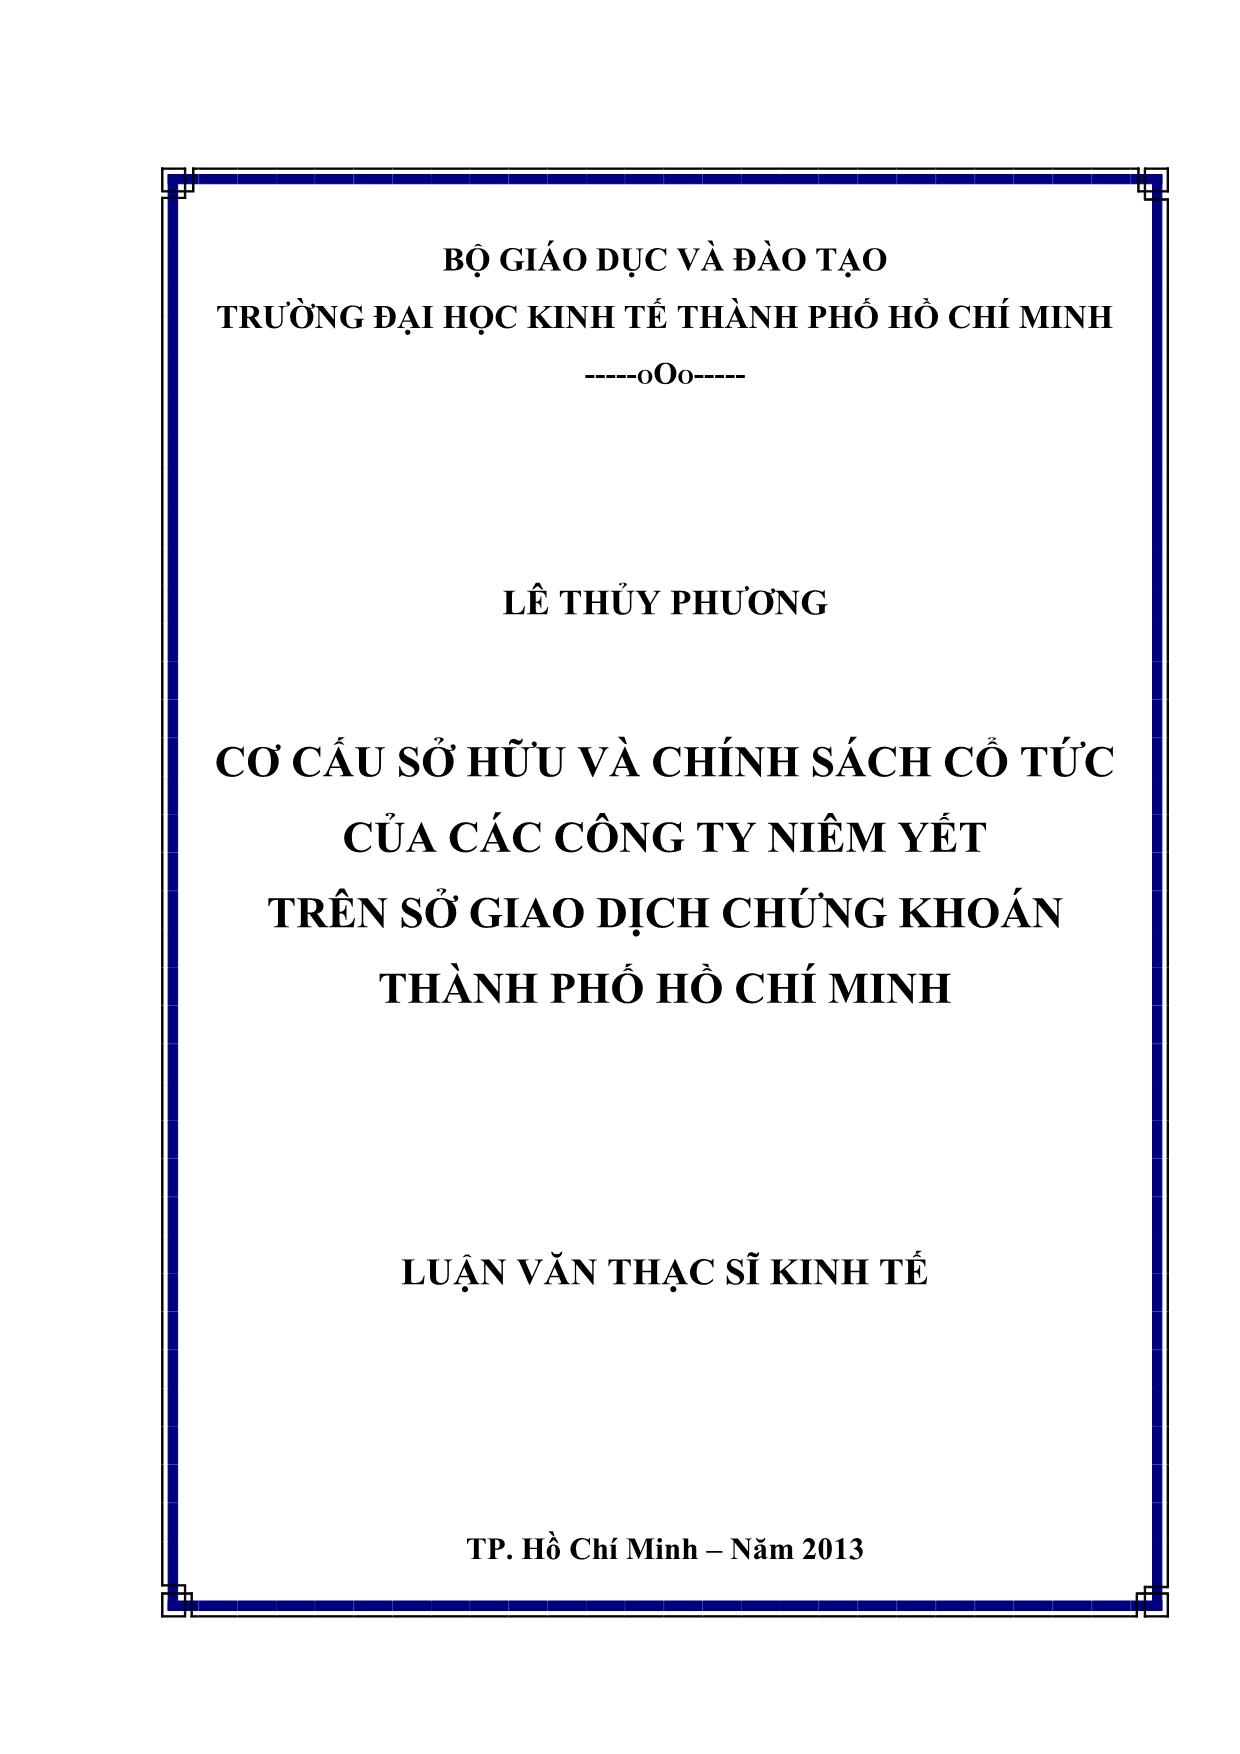 Cơ cấu sở hữu và chính sách cổ tức của các công ty niêm yết trên sở giao dịch chứng khoán thành phố Hồ Chí Minh trang 1